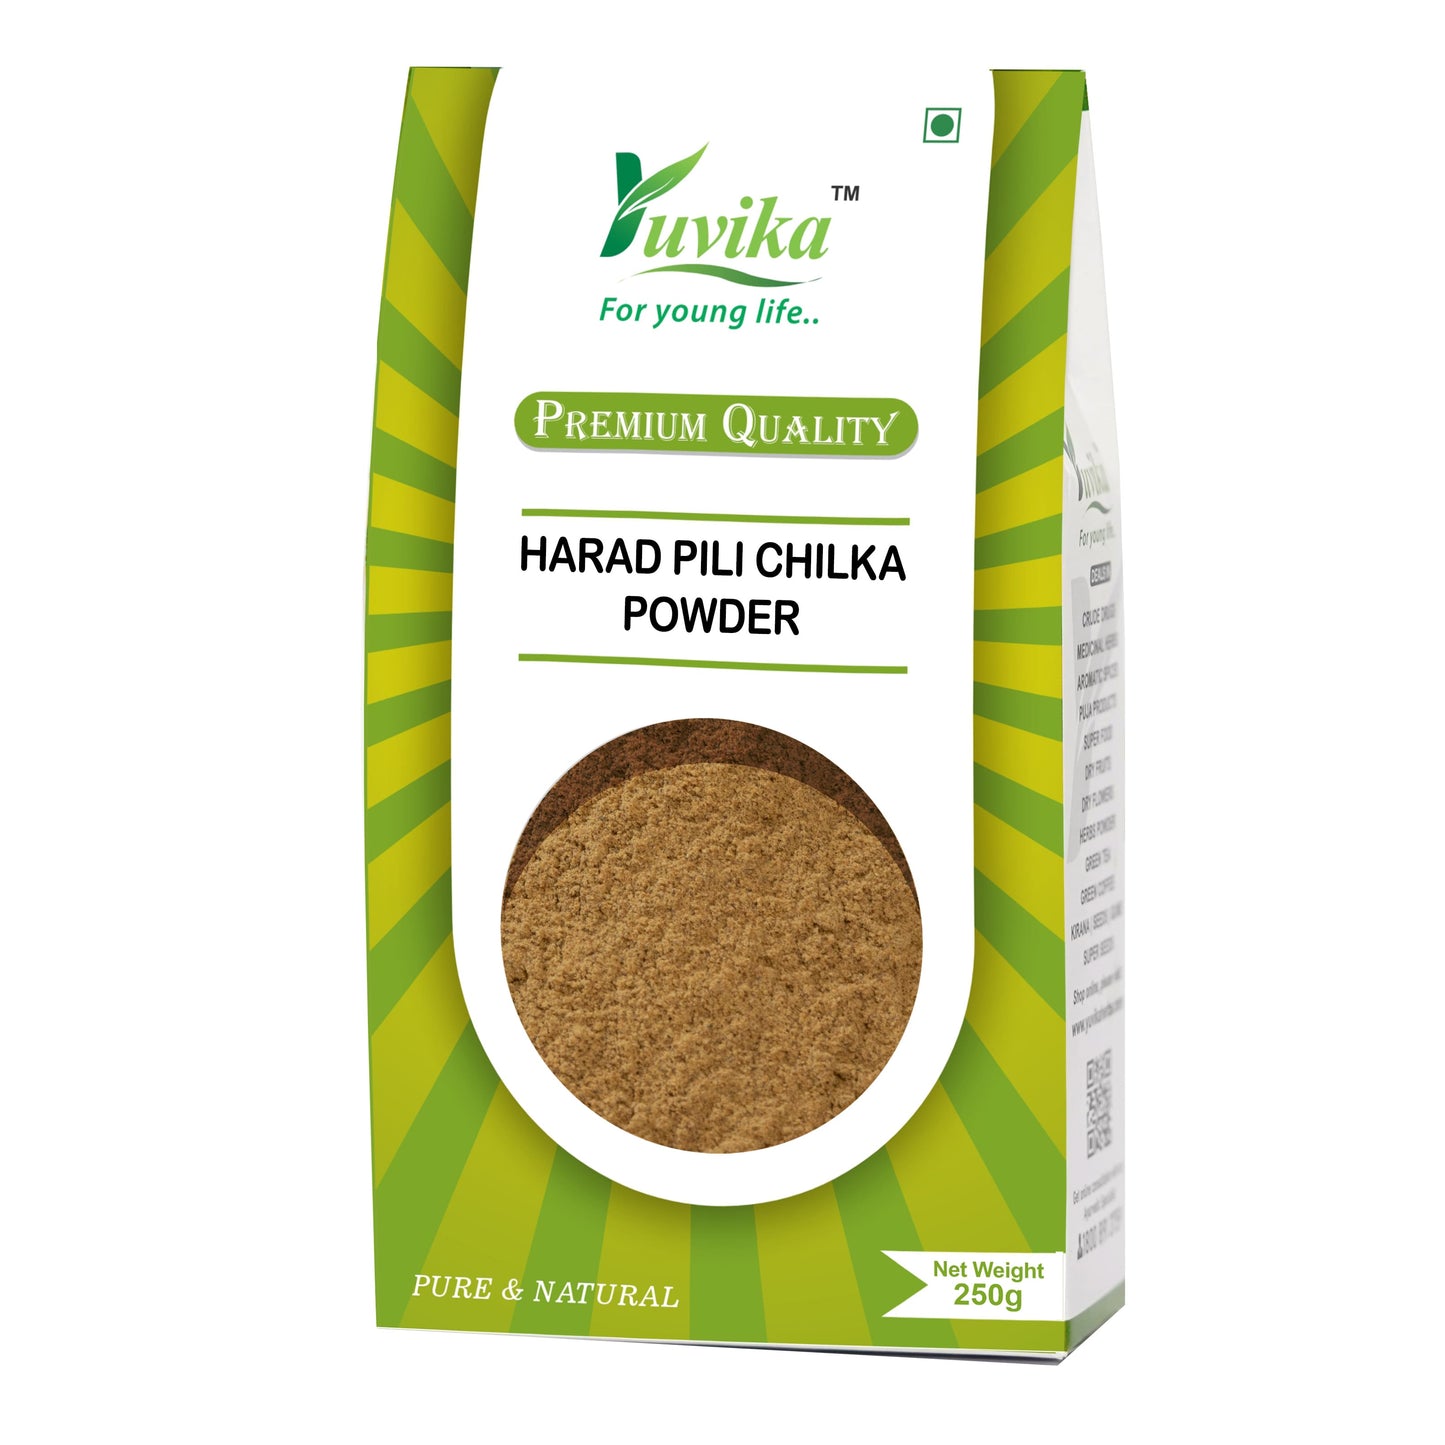 Harad Pili Chilka Powder - Haritaki Powder - Harad Badi Chilka Powder - Yellow Terminalia Chebula (250g)